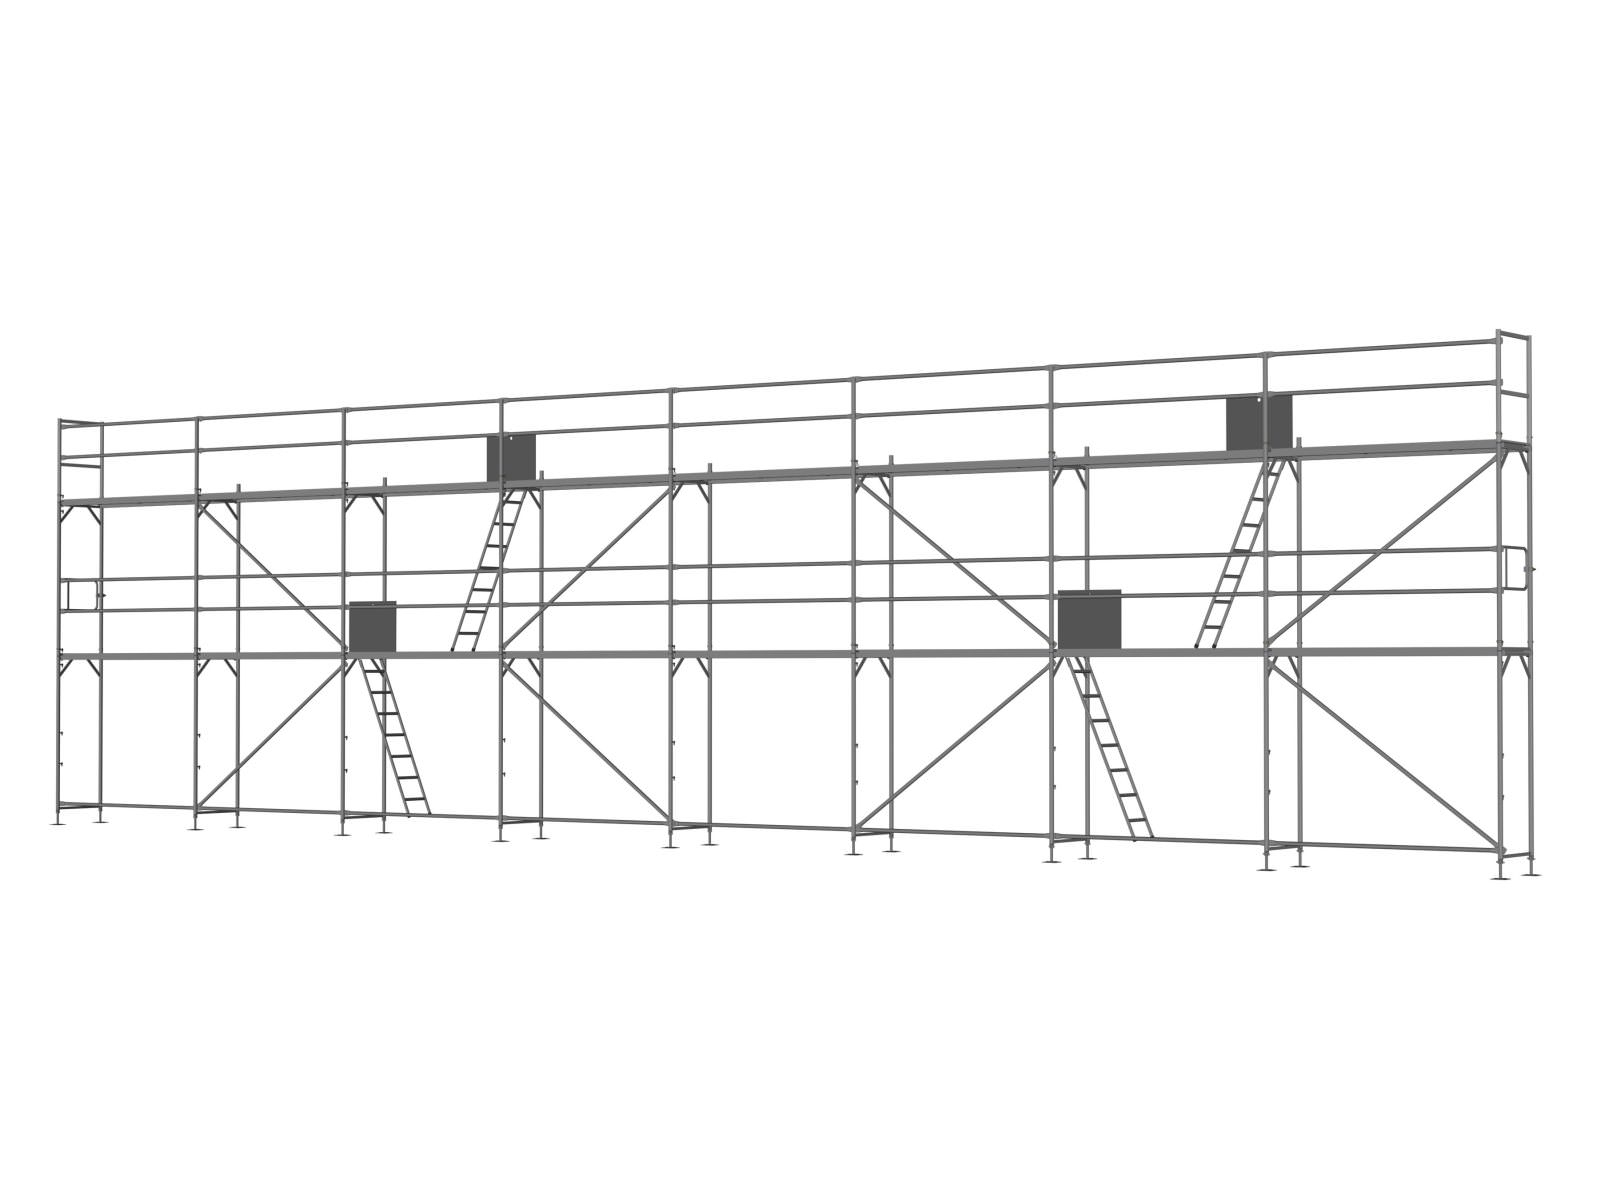 Stahl Traufseitengerüst 120 qm - 2,5 m Felder - 20 m lang - 6 m Arbeitshöhe - Basis-Gerüst inkl. Aufstieg & Befestigung